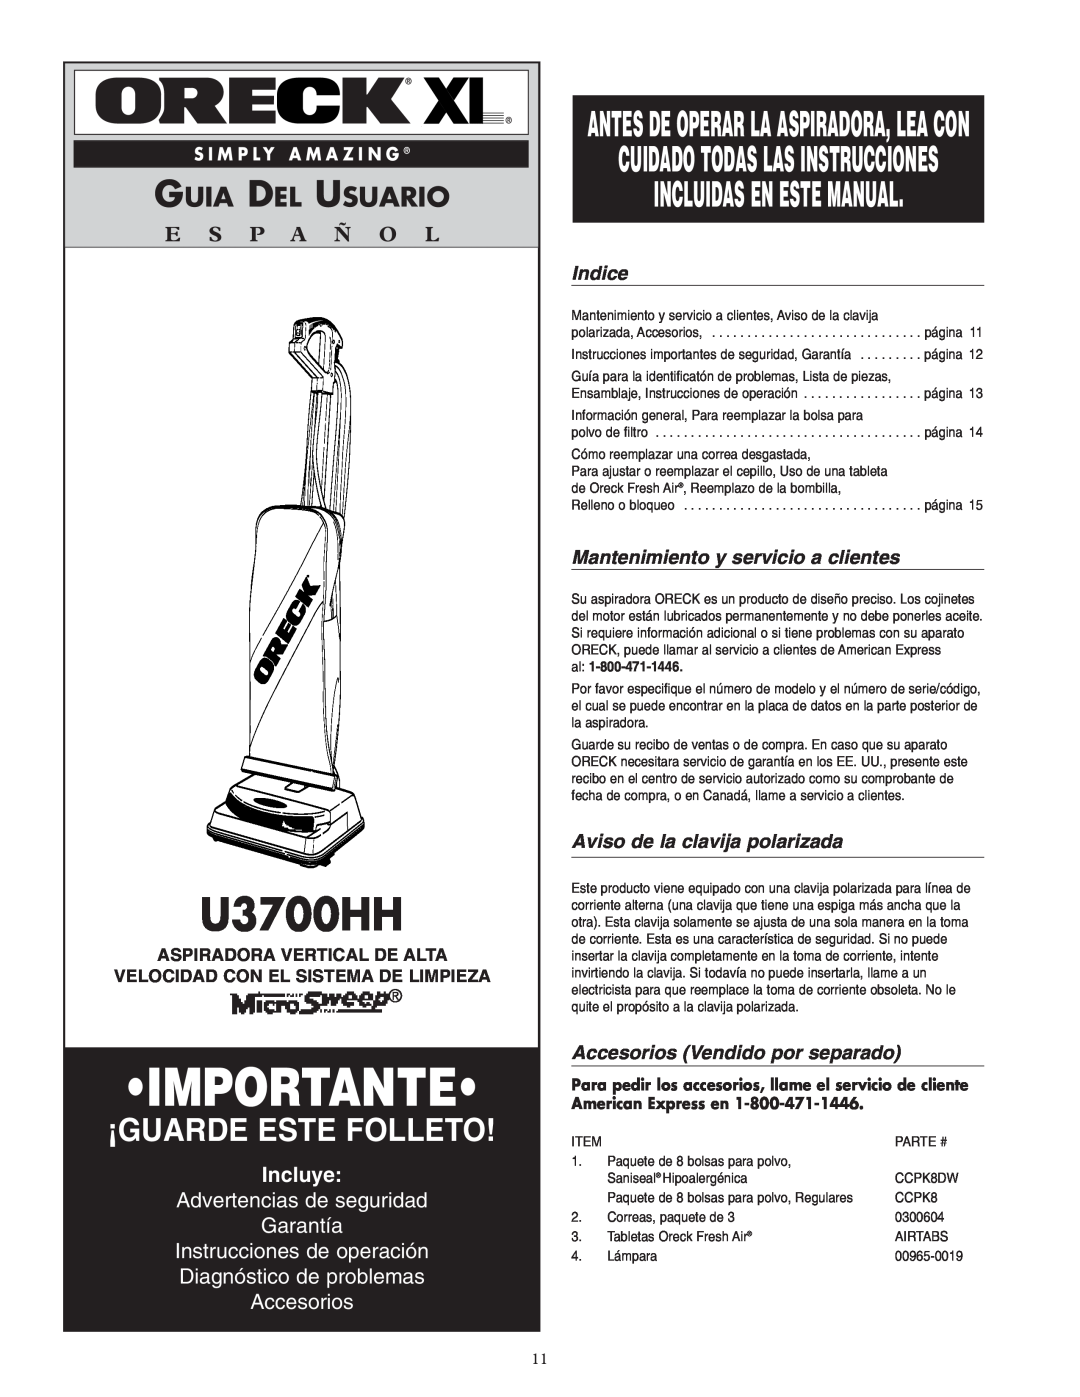 Oreck U3700HH Incluidas En Este Manual, Guia Del Usuario, E S P A Ñ O L, Incluye, Advertencias de seguridad Garantía 